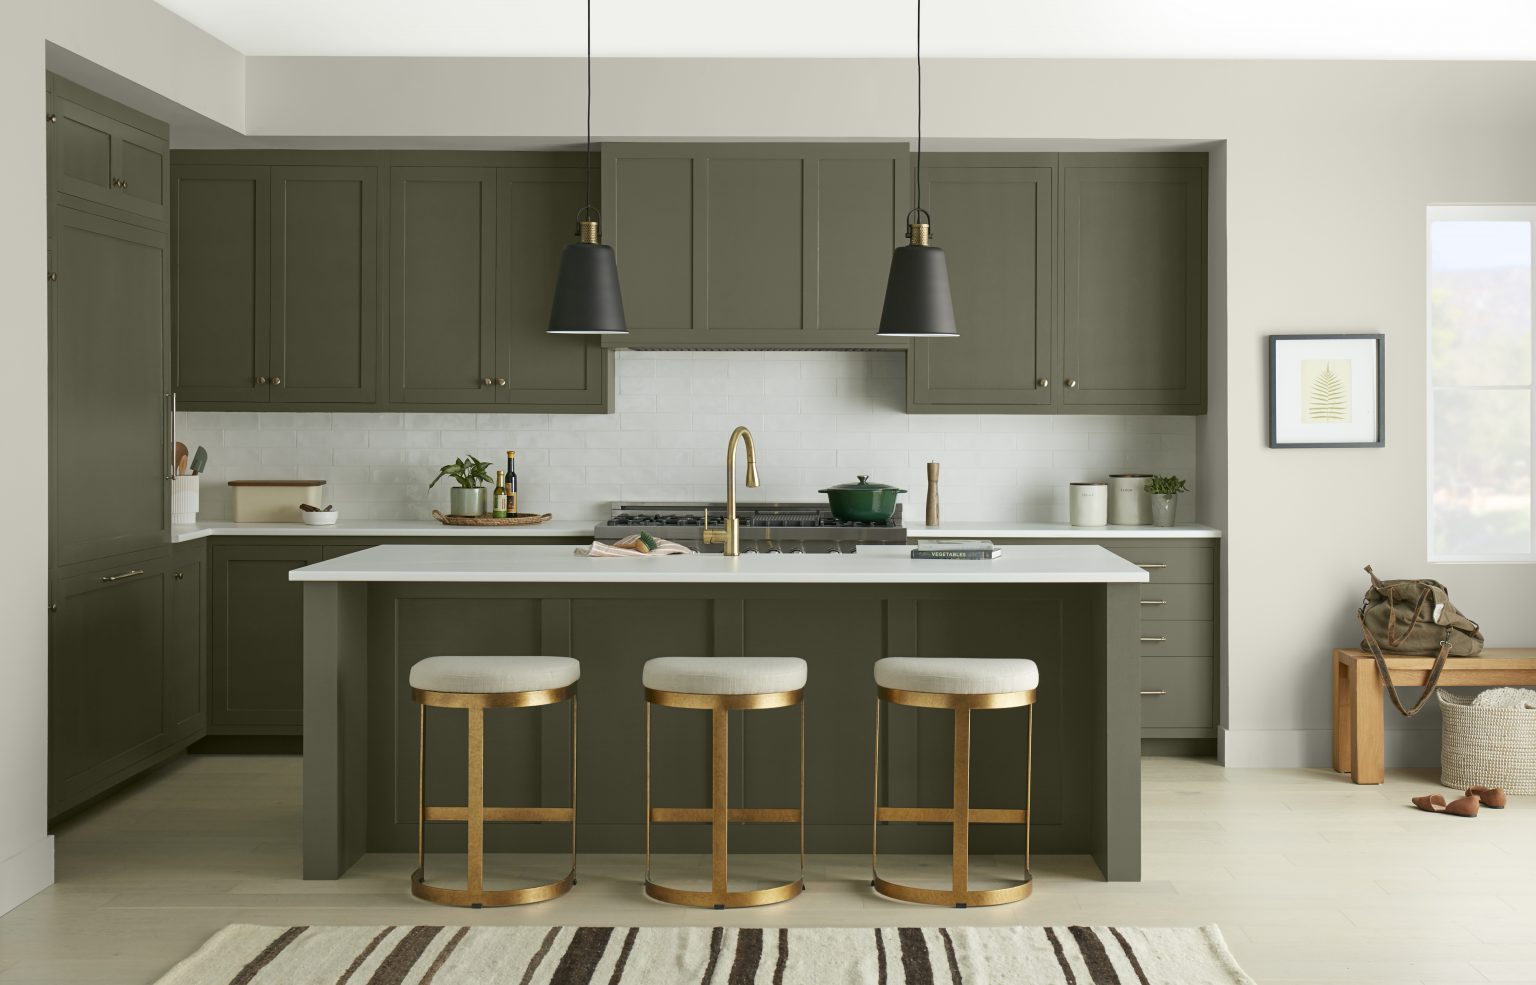 Une cuisine moderne aux armoires et îlot peints en vert olive foncé et une quincaillerie et tabourets dorés 